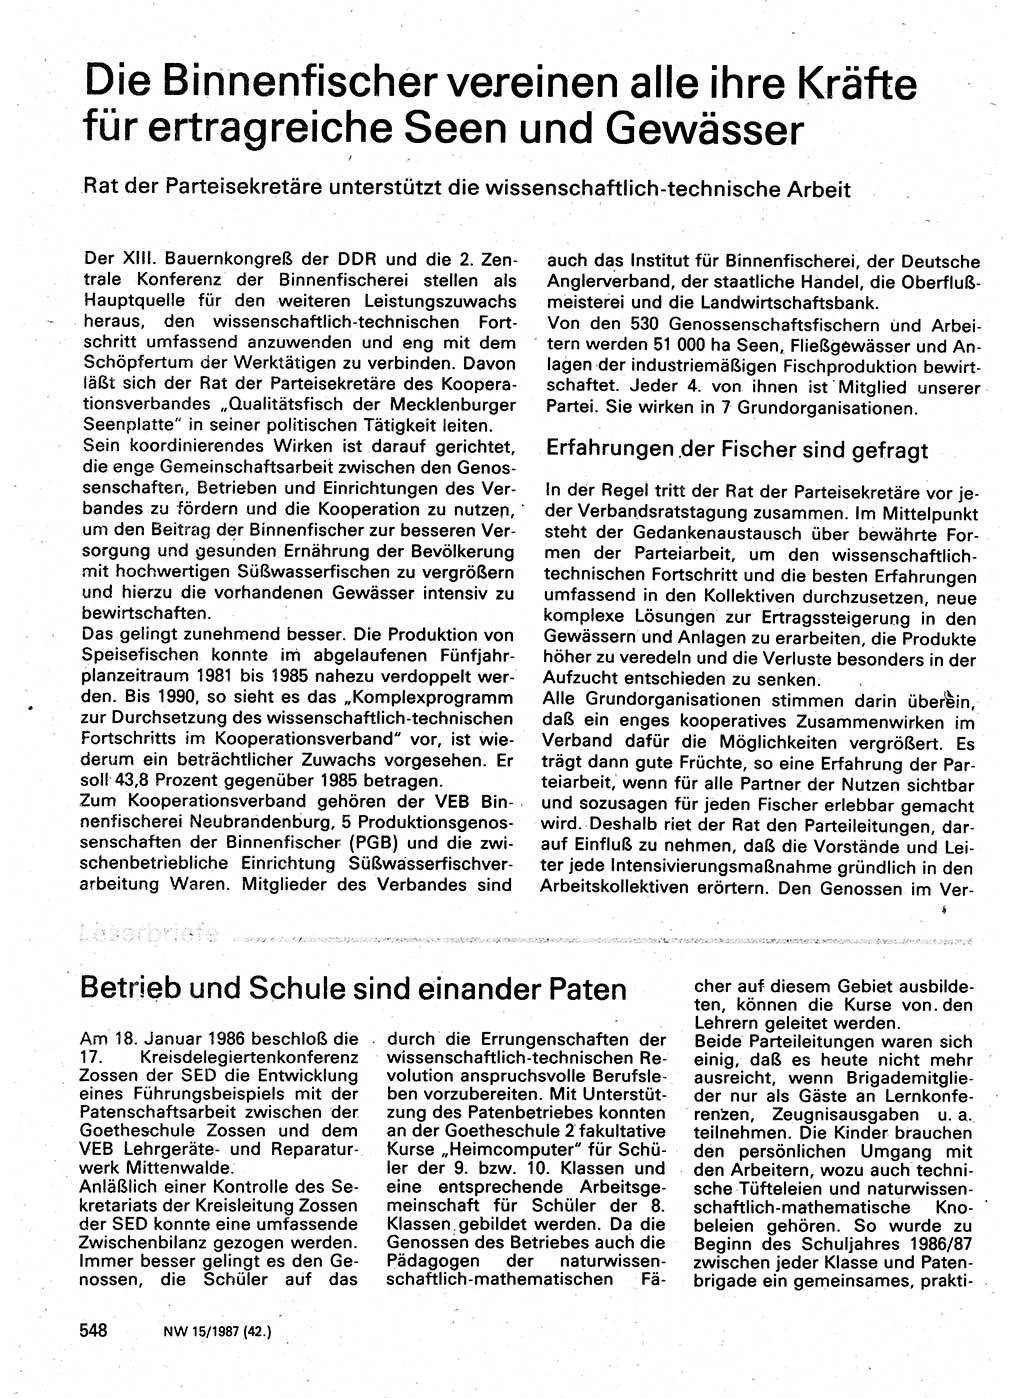 Neuer Weg (NW), Organ des Zentralkomitees (ZK) der SED (Sozialistische Einheitspartei Deutschlands) für Fragen des Parteilebens, 42. Jahrgang [Deutsche Demokratische Republik (DDR)] 1987, Seite 548 (NW ZK SED DDR 1987, S. 548)